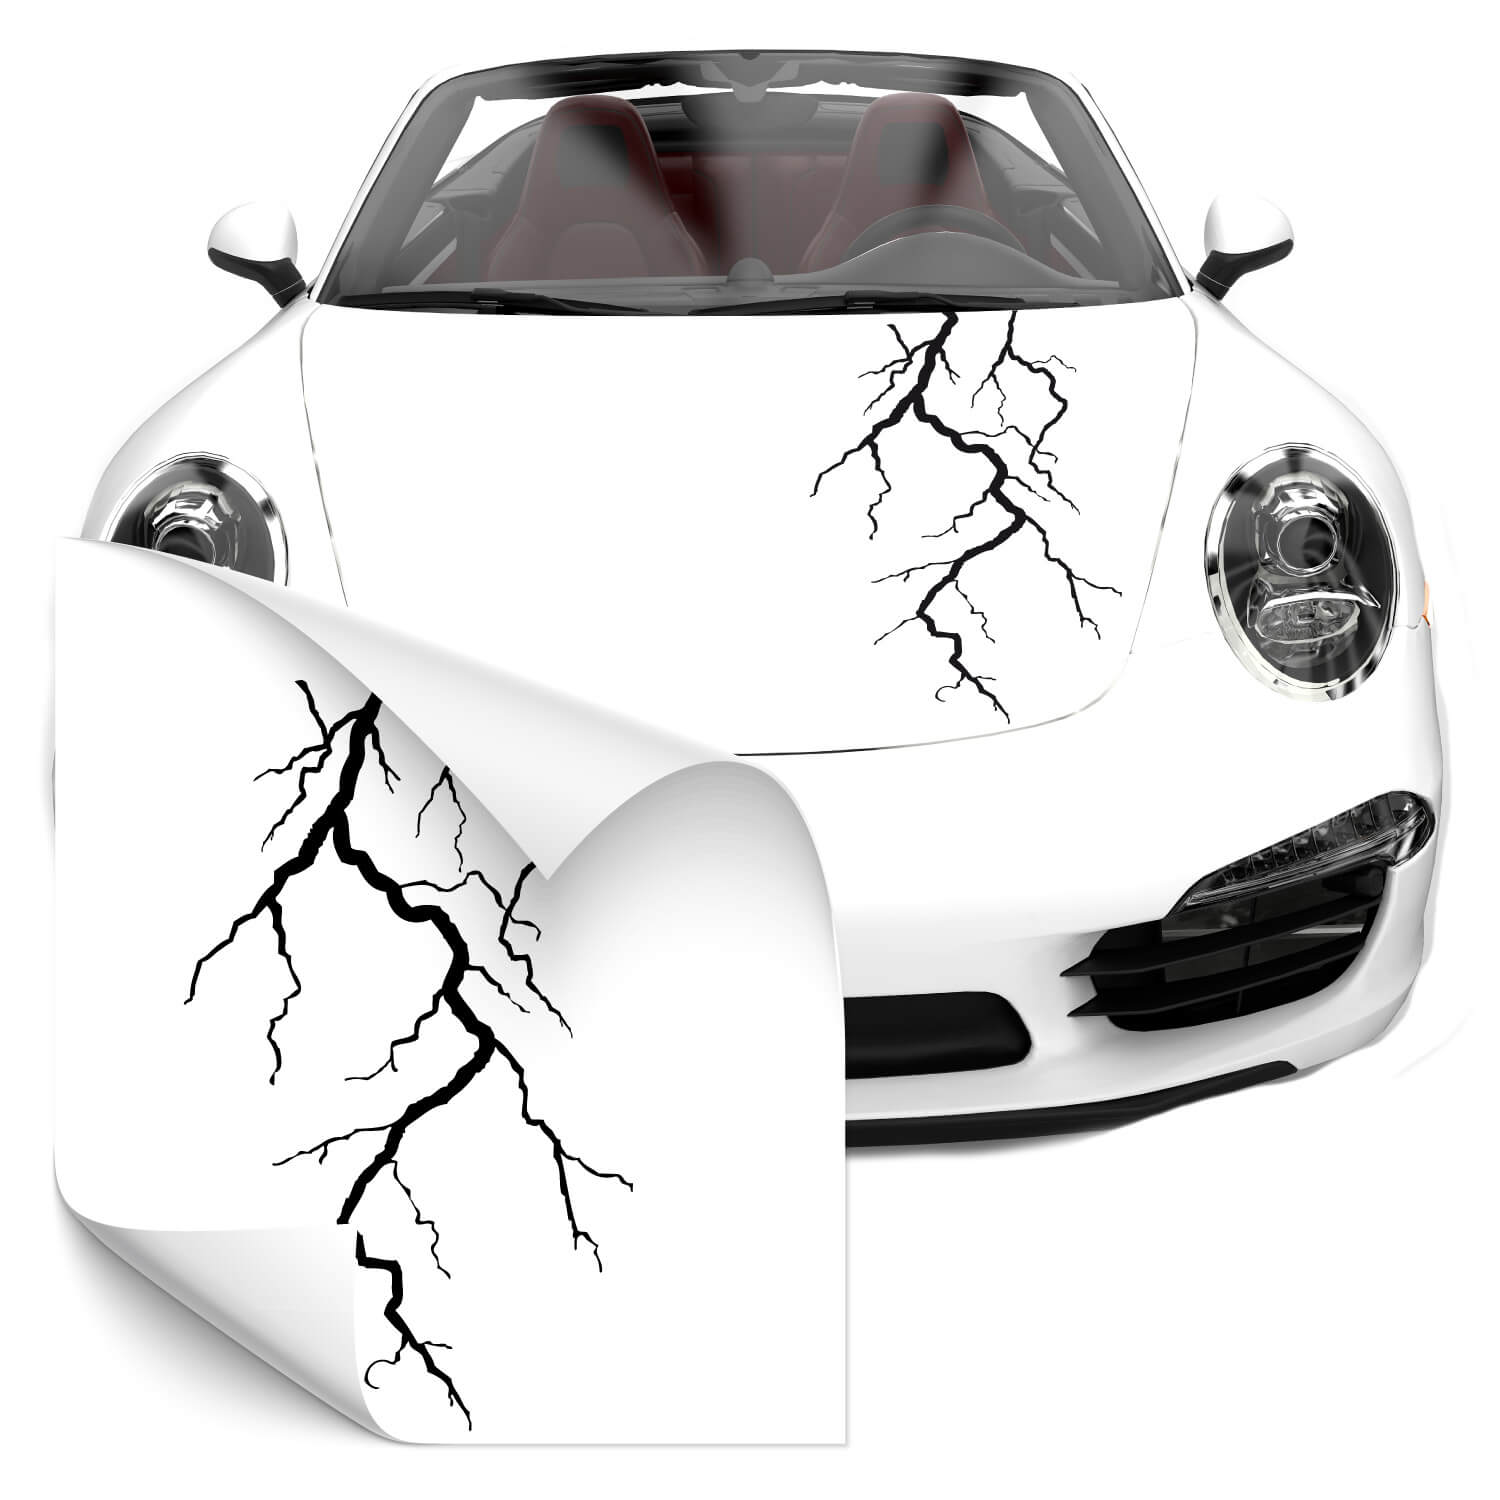 Car Tuning Aufkleber mit Blitz jetzt günstig bei Klebe-X kaufen!